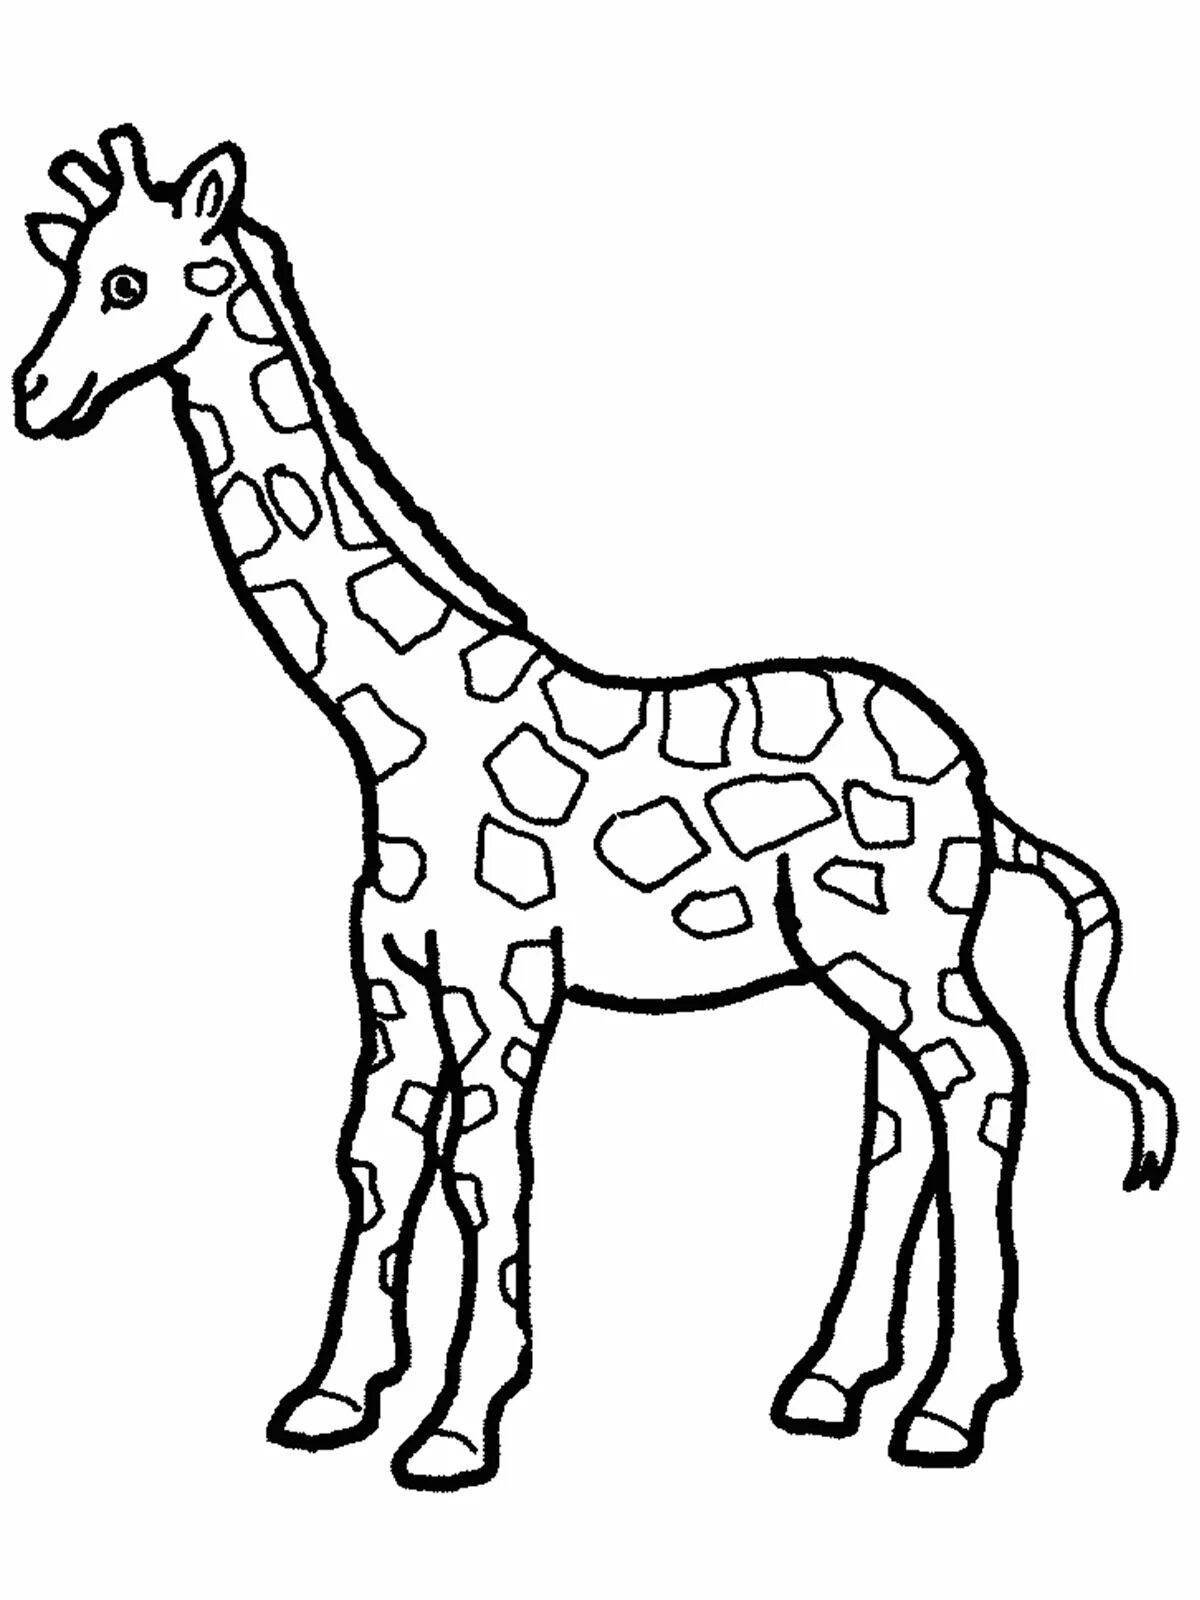 Magic giraffe coloring book for kids